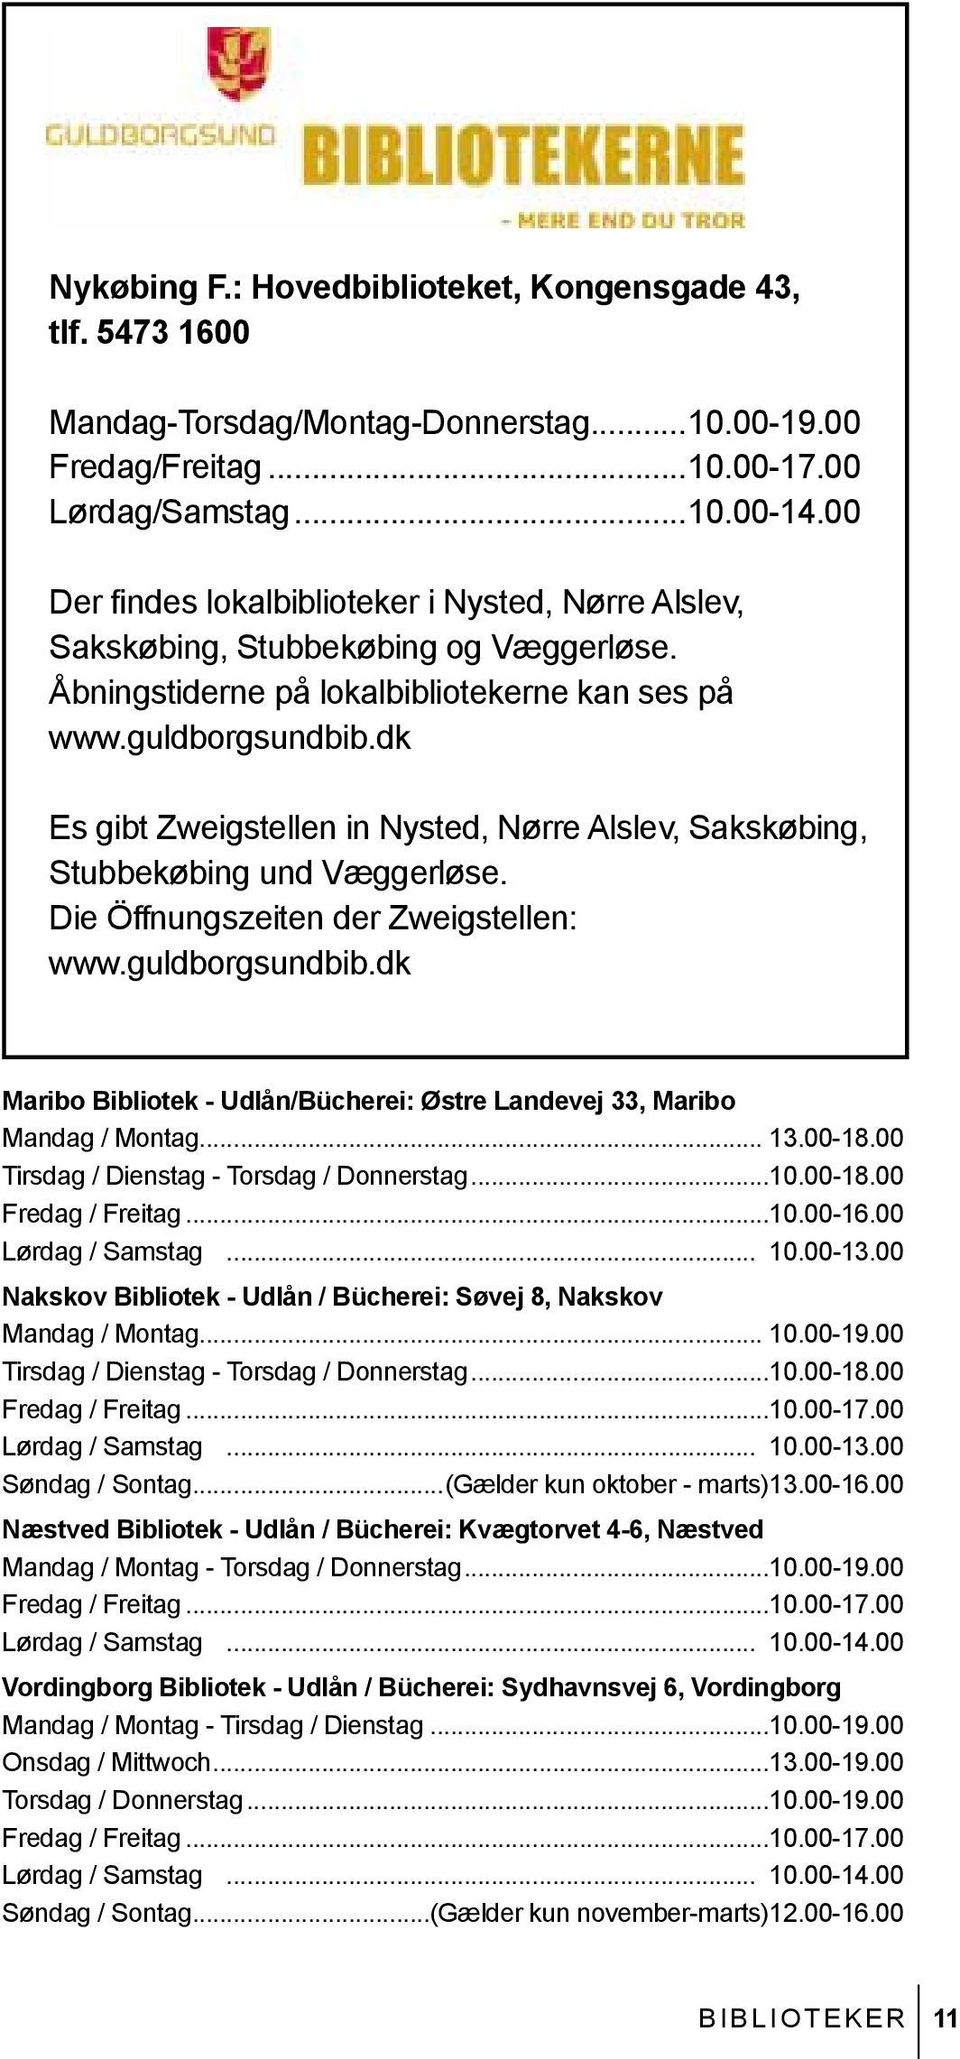 Die Öffnungszeiten der Zweigstellen: www.guldborgsundbib.dk Maribo Bibliotek - udlån/bücherei: Østre Landevej 33, Maribo Mandag / Montag... 13.00-18.00 Tirsdag / Dienstag - Torsdag / Donnerstag...10.